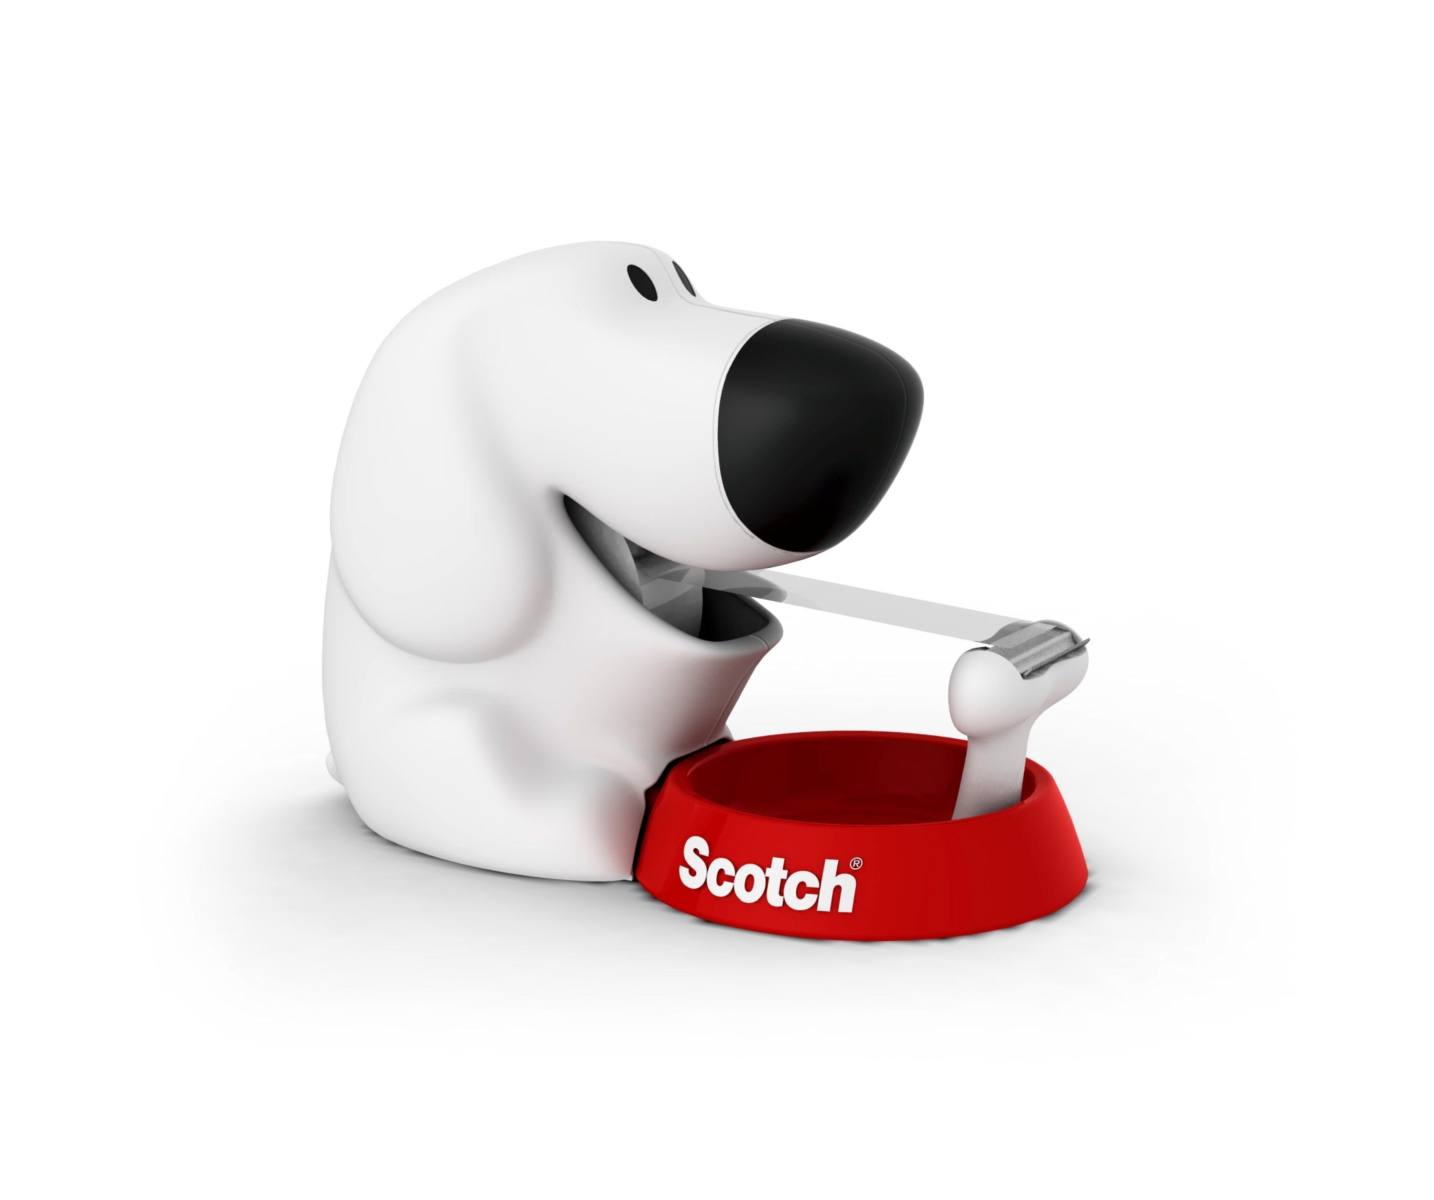 3M Scotch dog dispenser manuale + 1 rotolo di nastro adesivo Scotch Magic 19 mm x 8,89 m